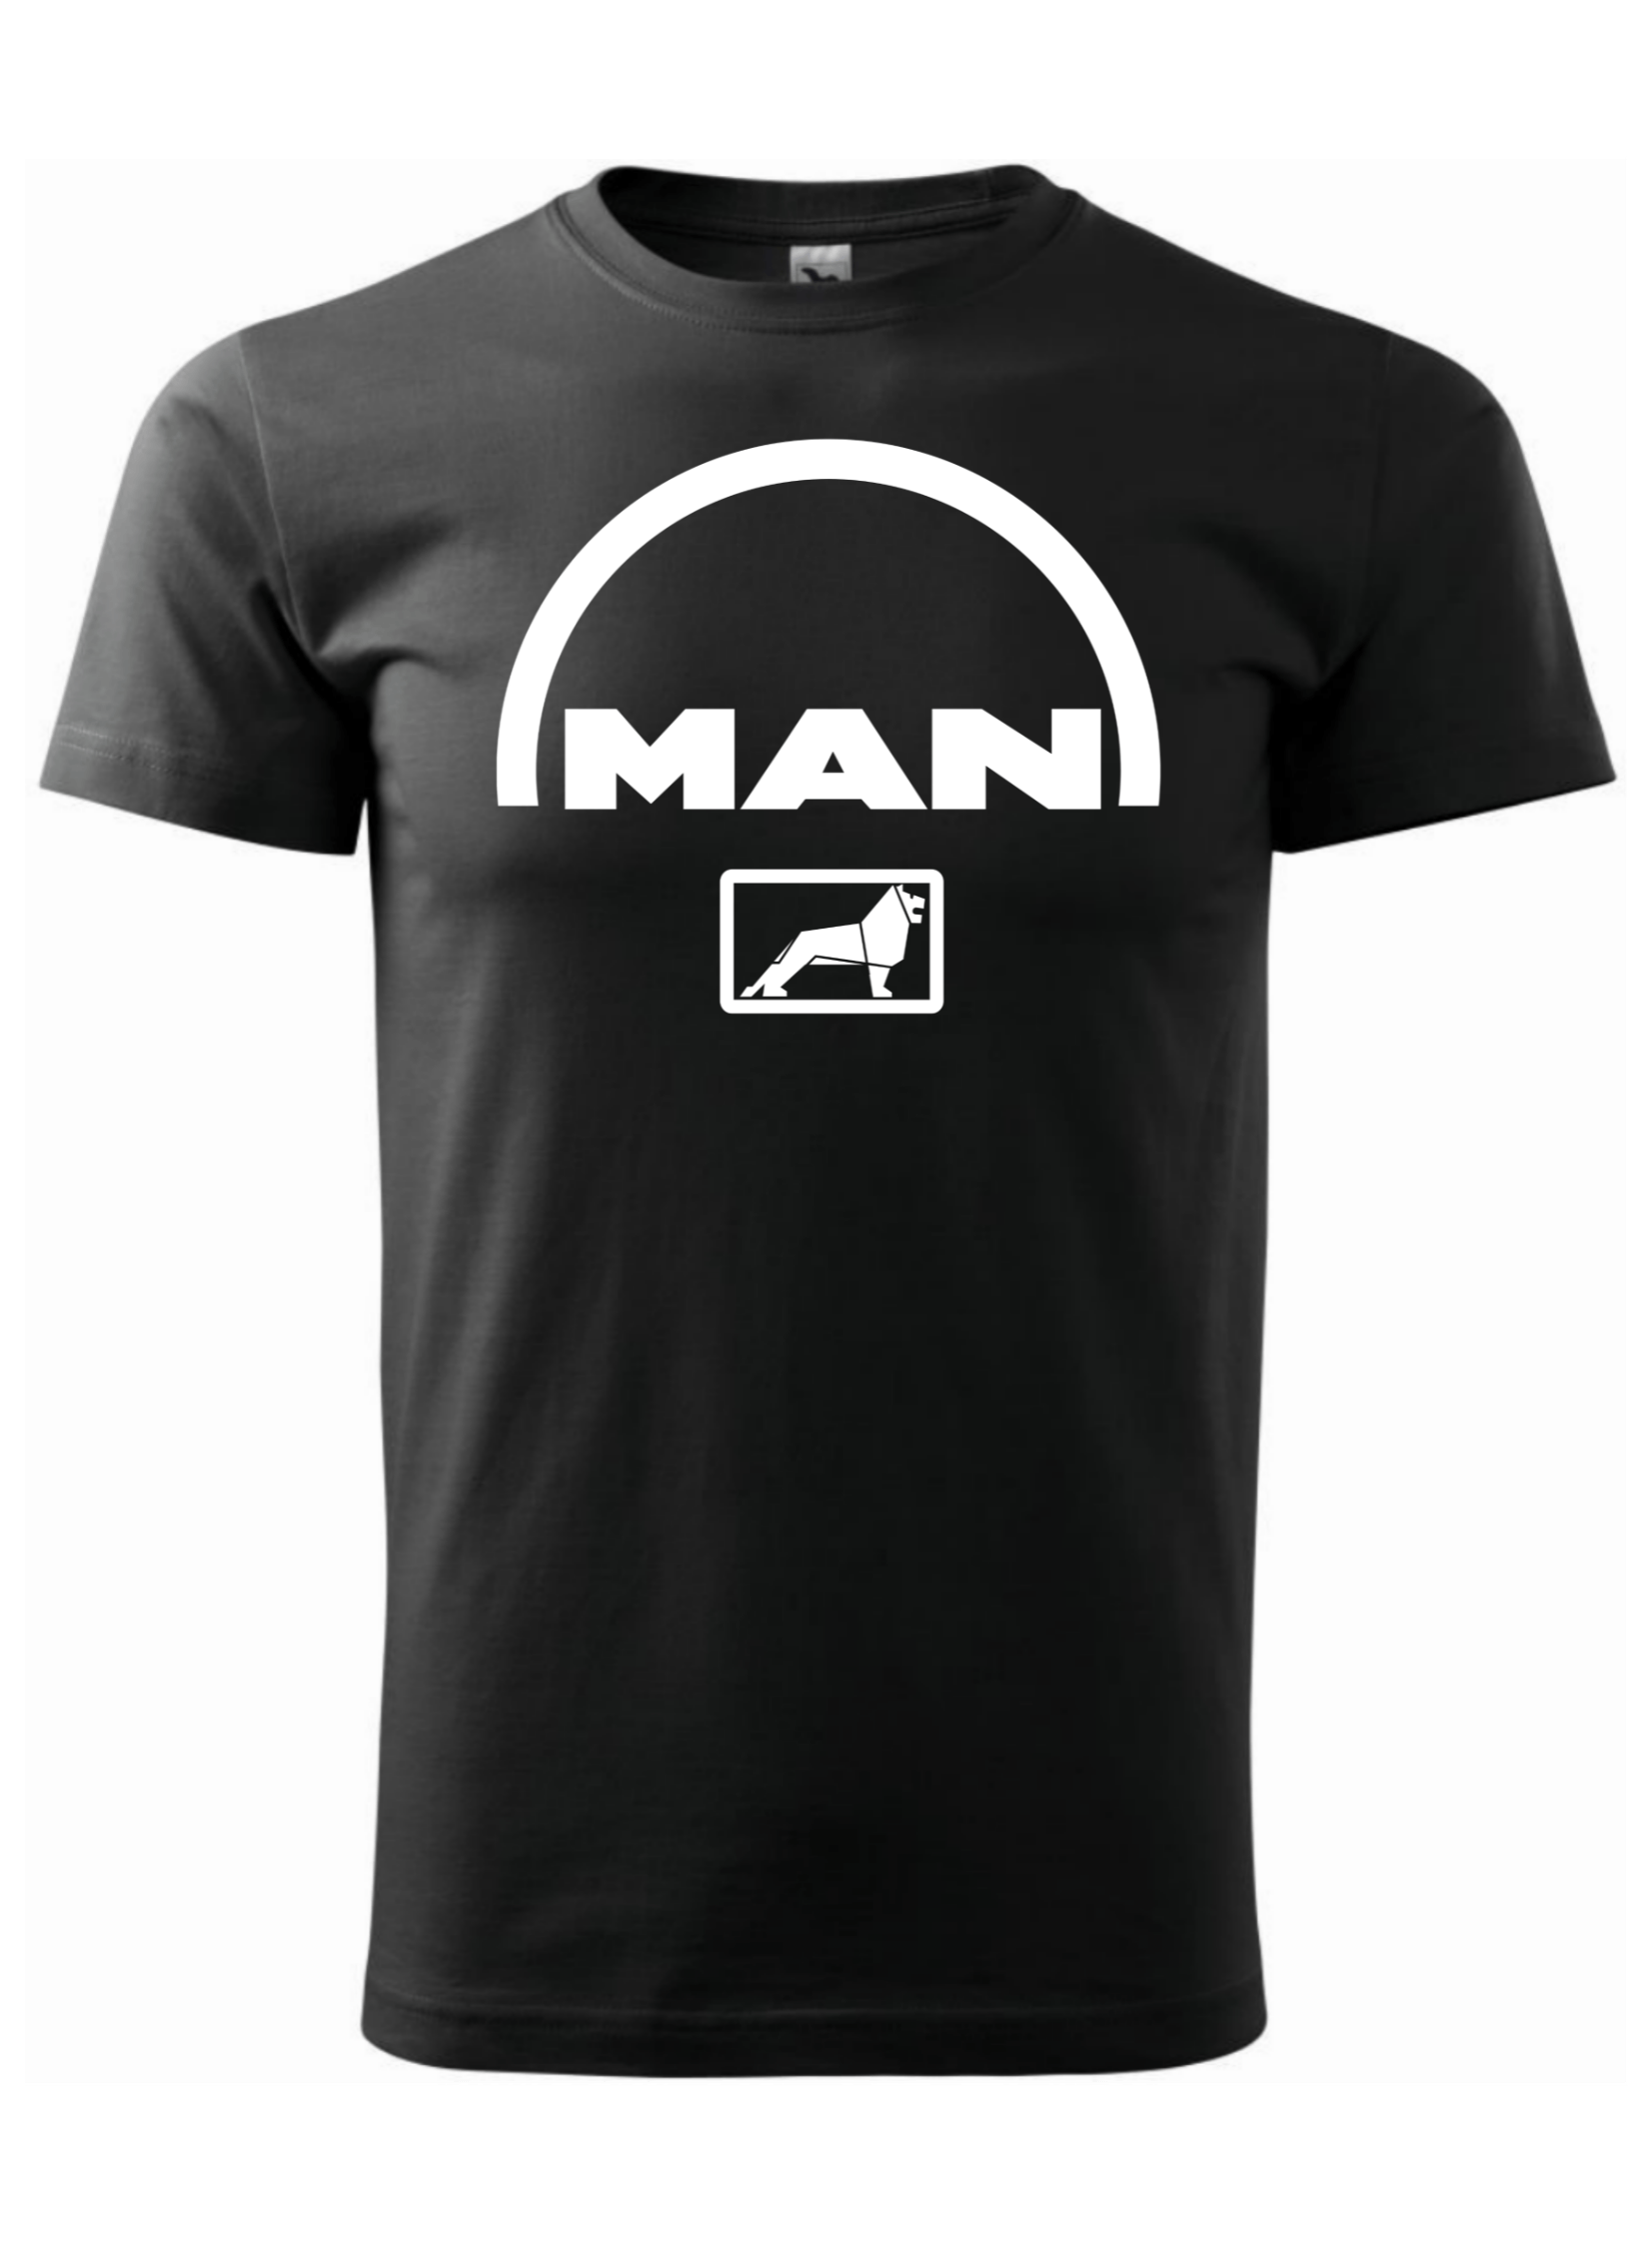 Pánské tričko s potiskem značky MAN 1